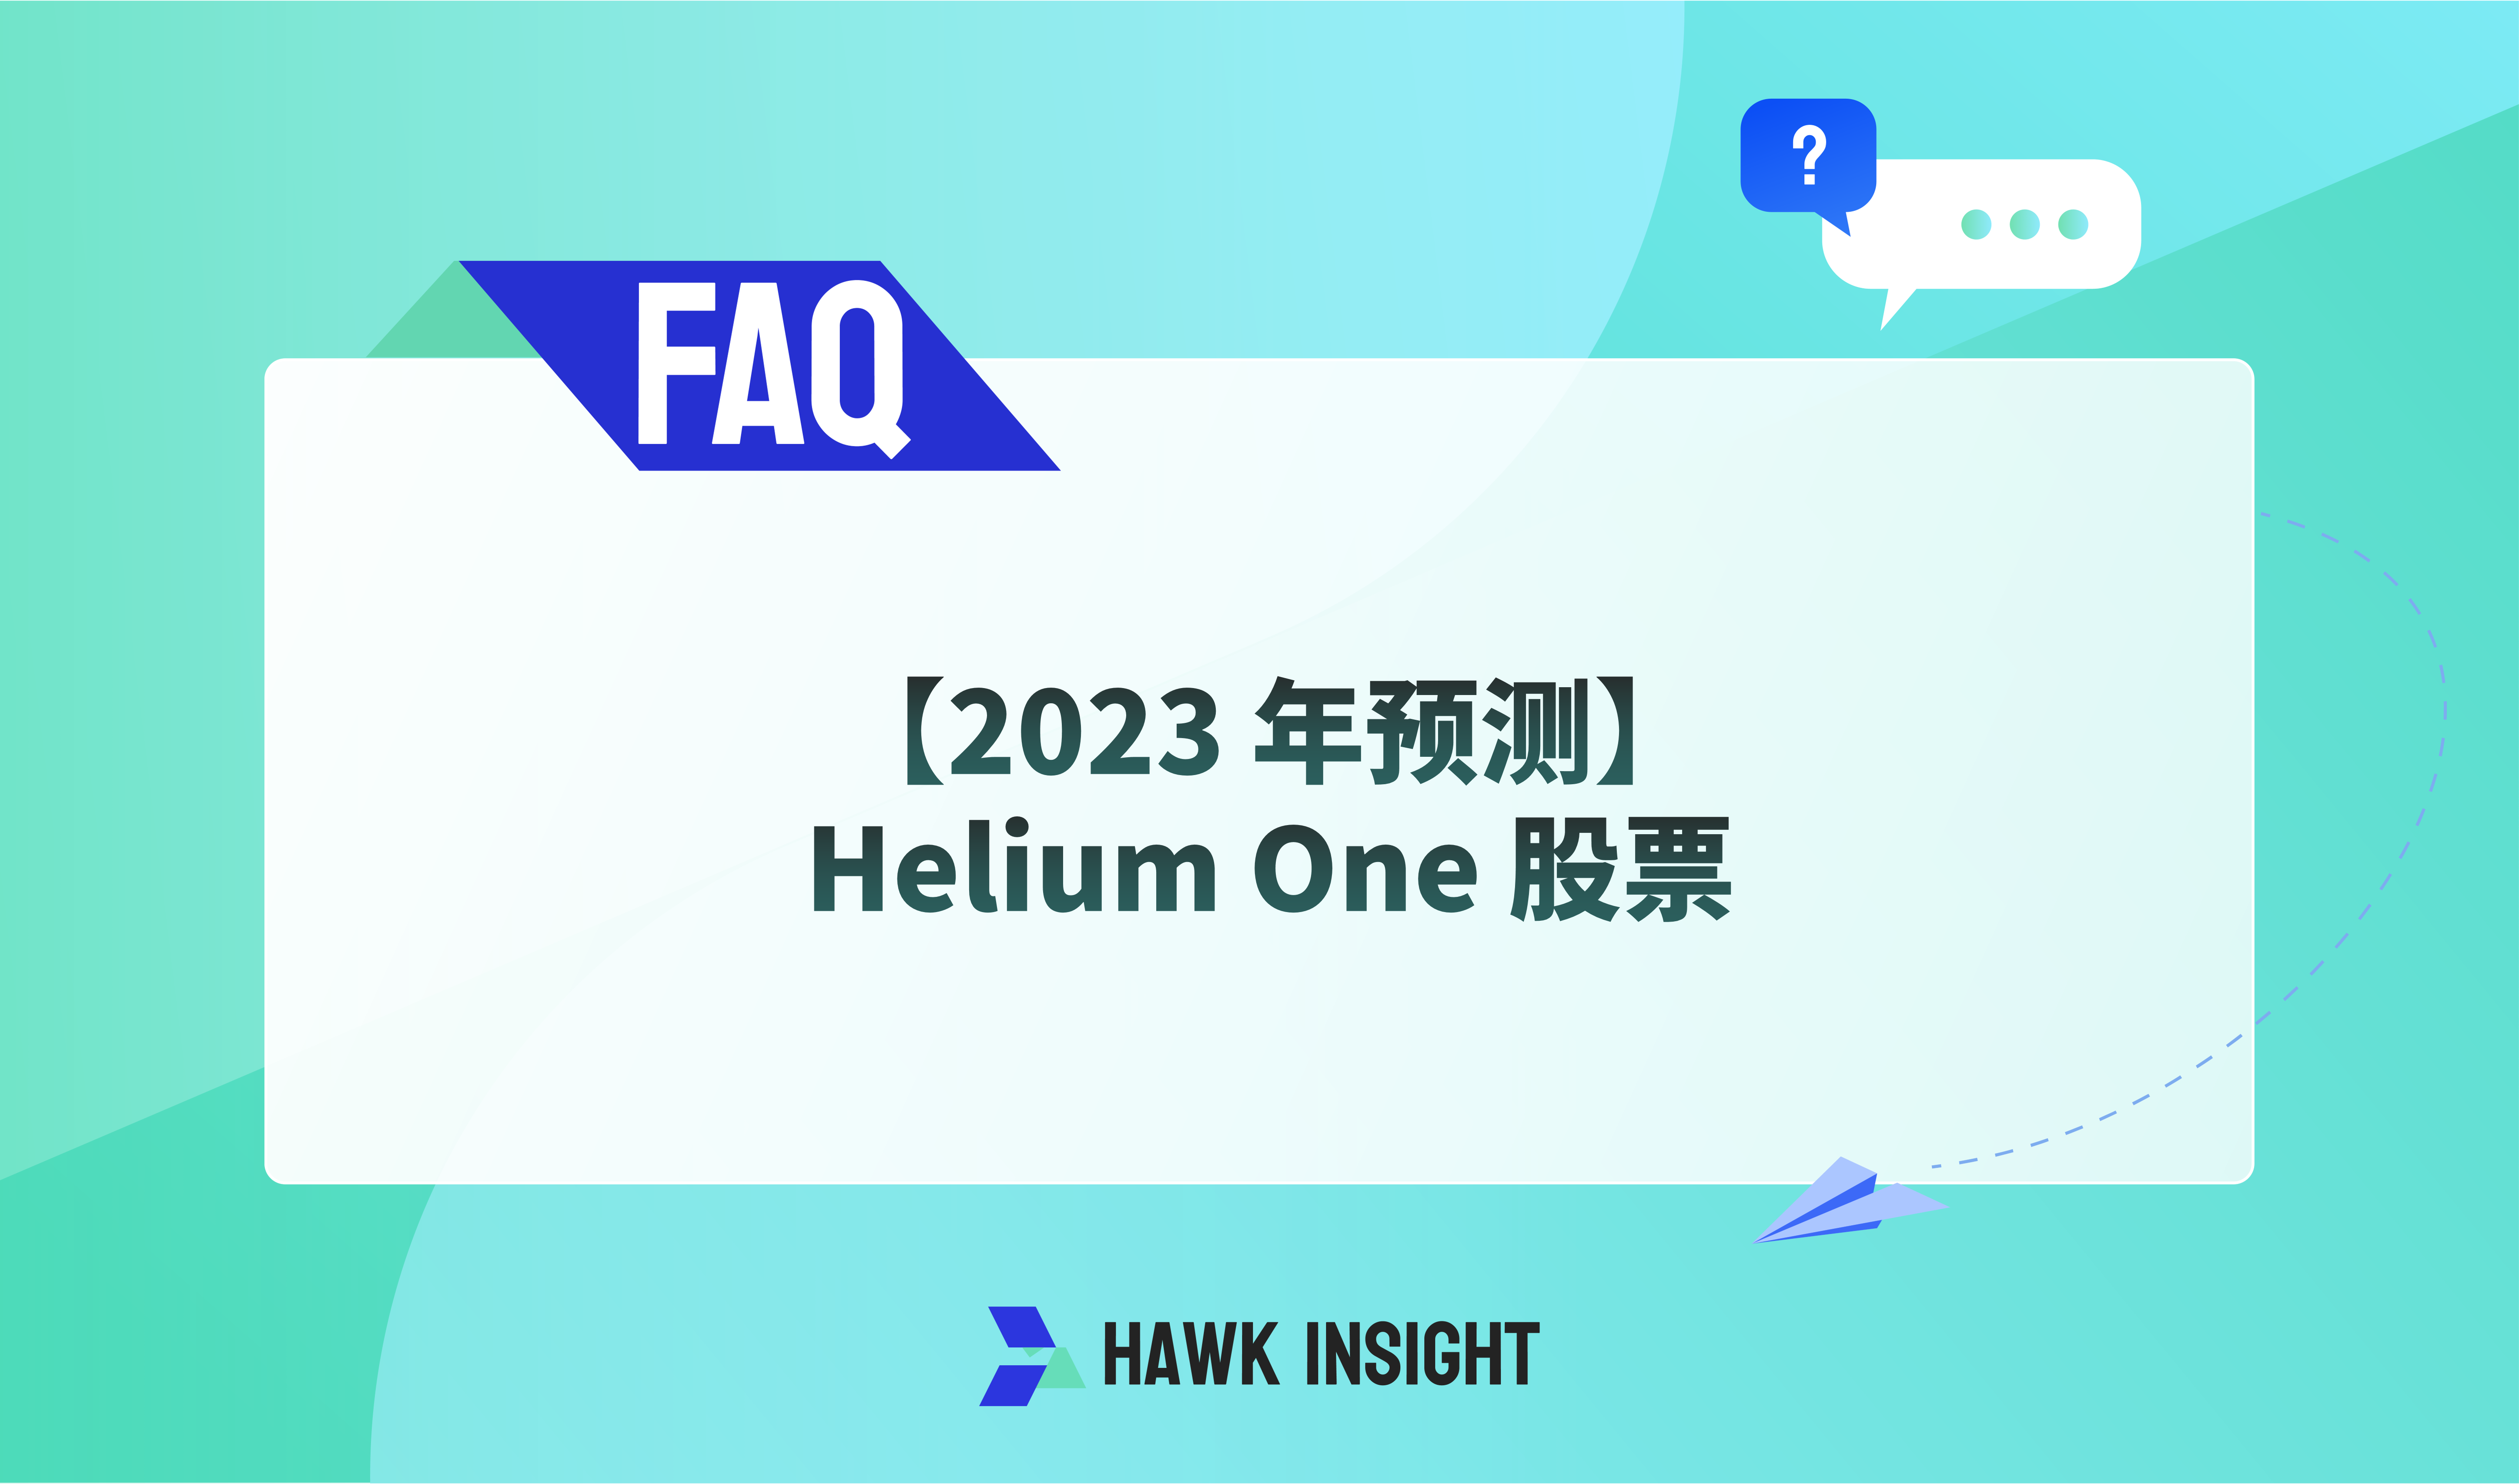 【2023 年预测】Helium One 股票